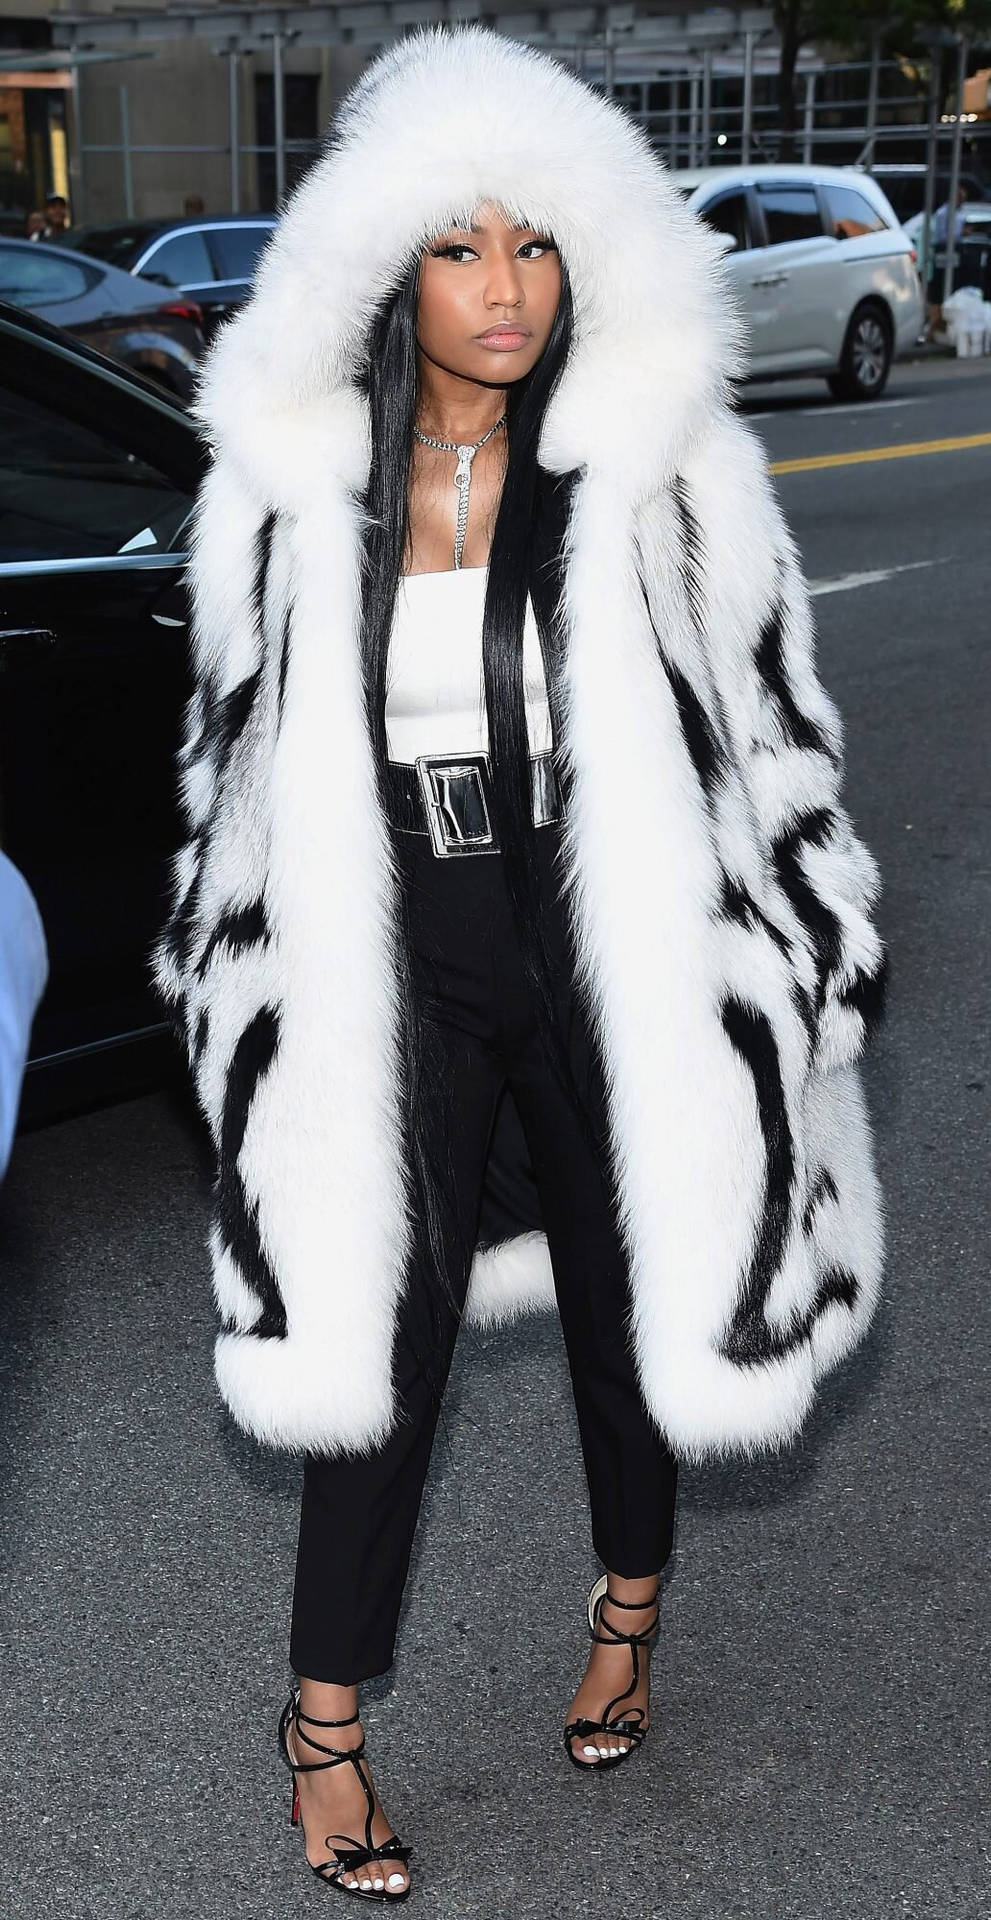 Nicki Minaj Wearing Animal Fur Coat Background